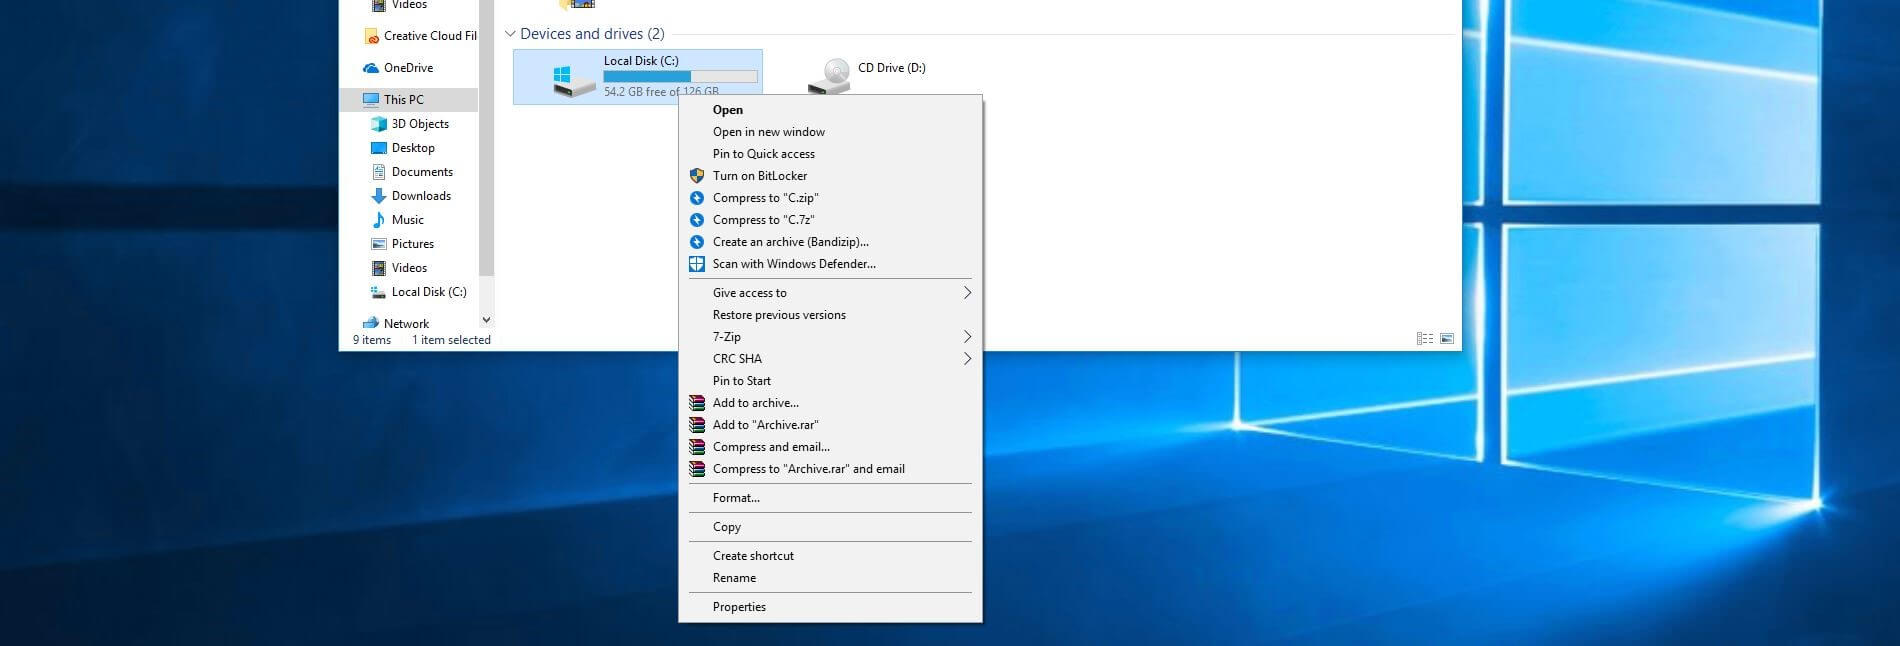 Vista general del equipo y discos duros en Windows 10